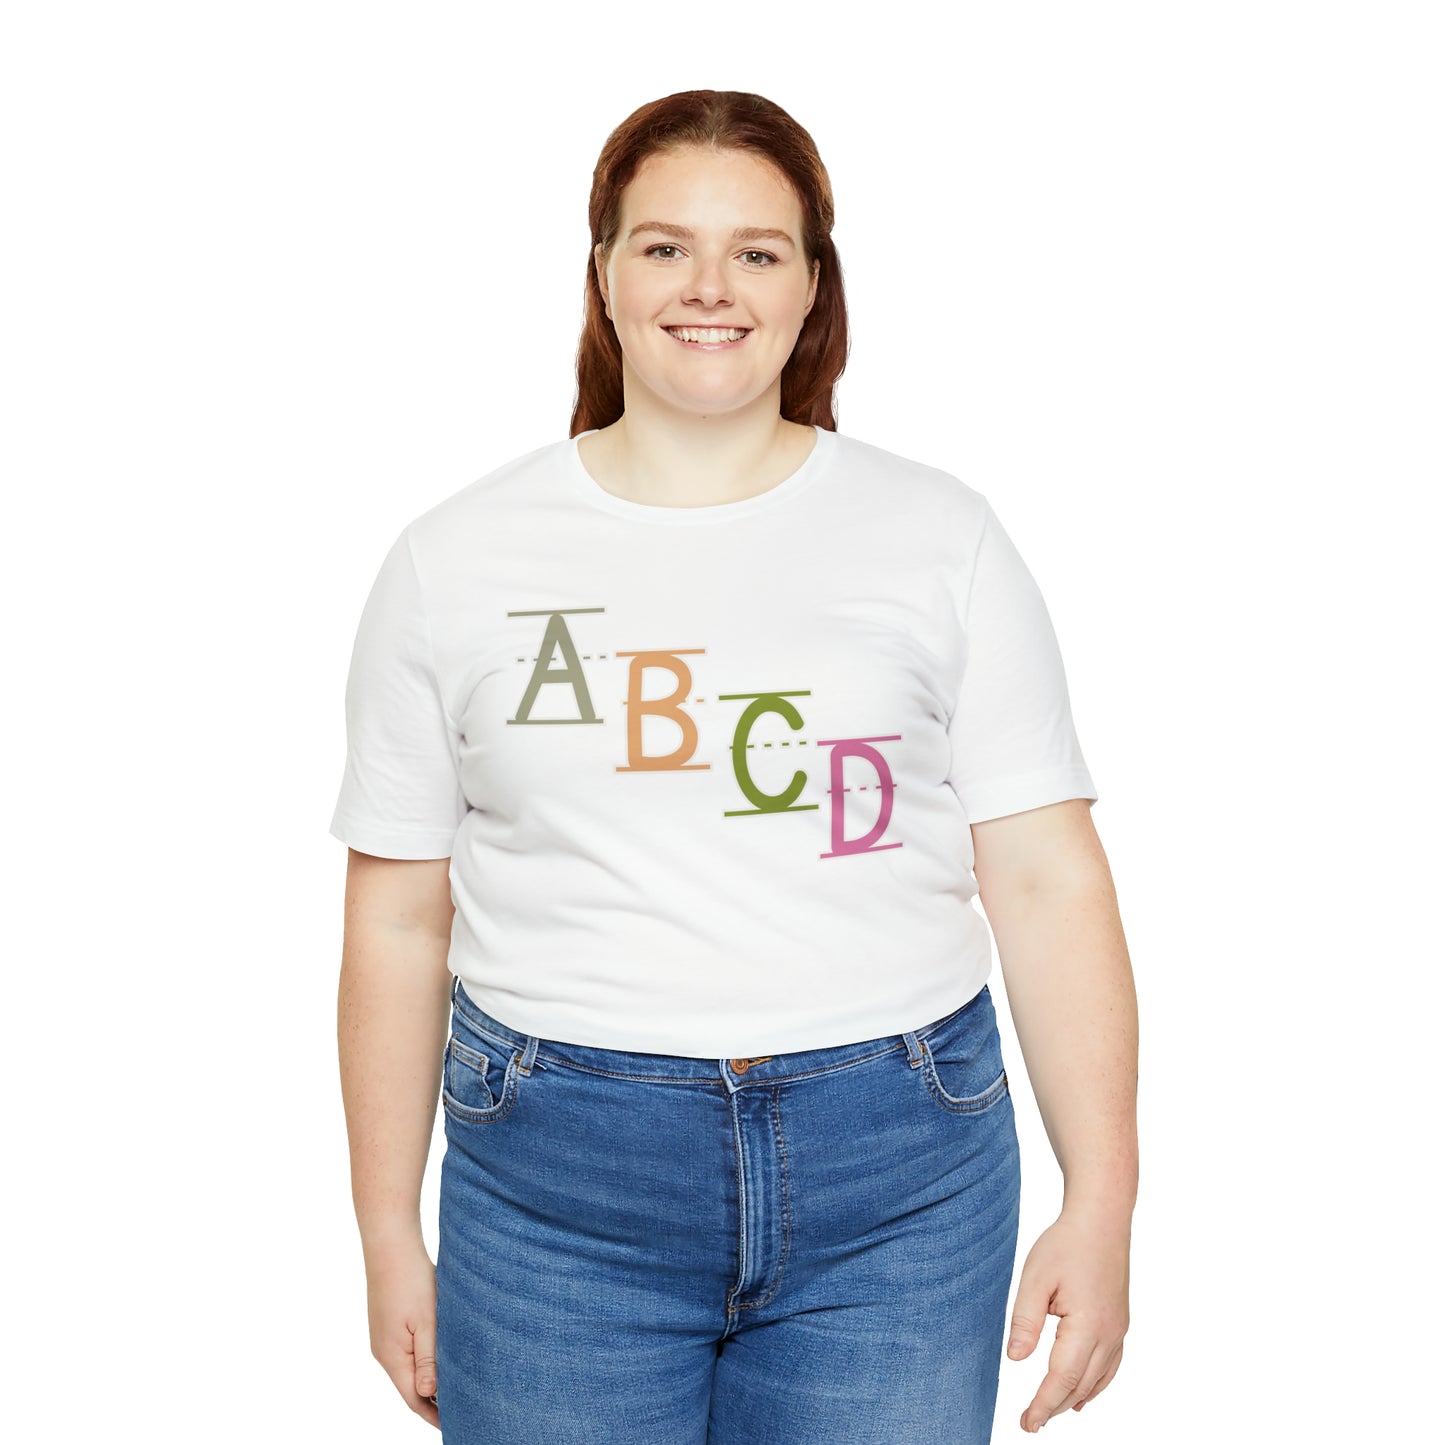 Pre-school Teacher Shirt, Kindergarten Teacher Shirt, ABCD Shirt, Cute Teacher Shirt, Nursery Teacher Shirt, T375